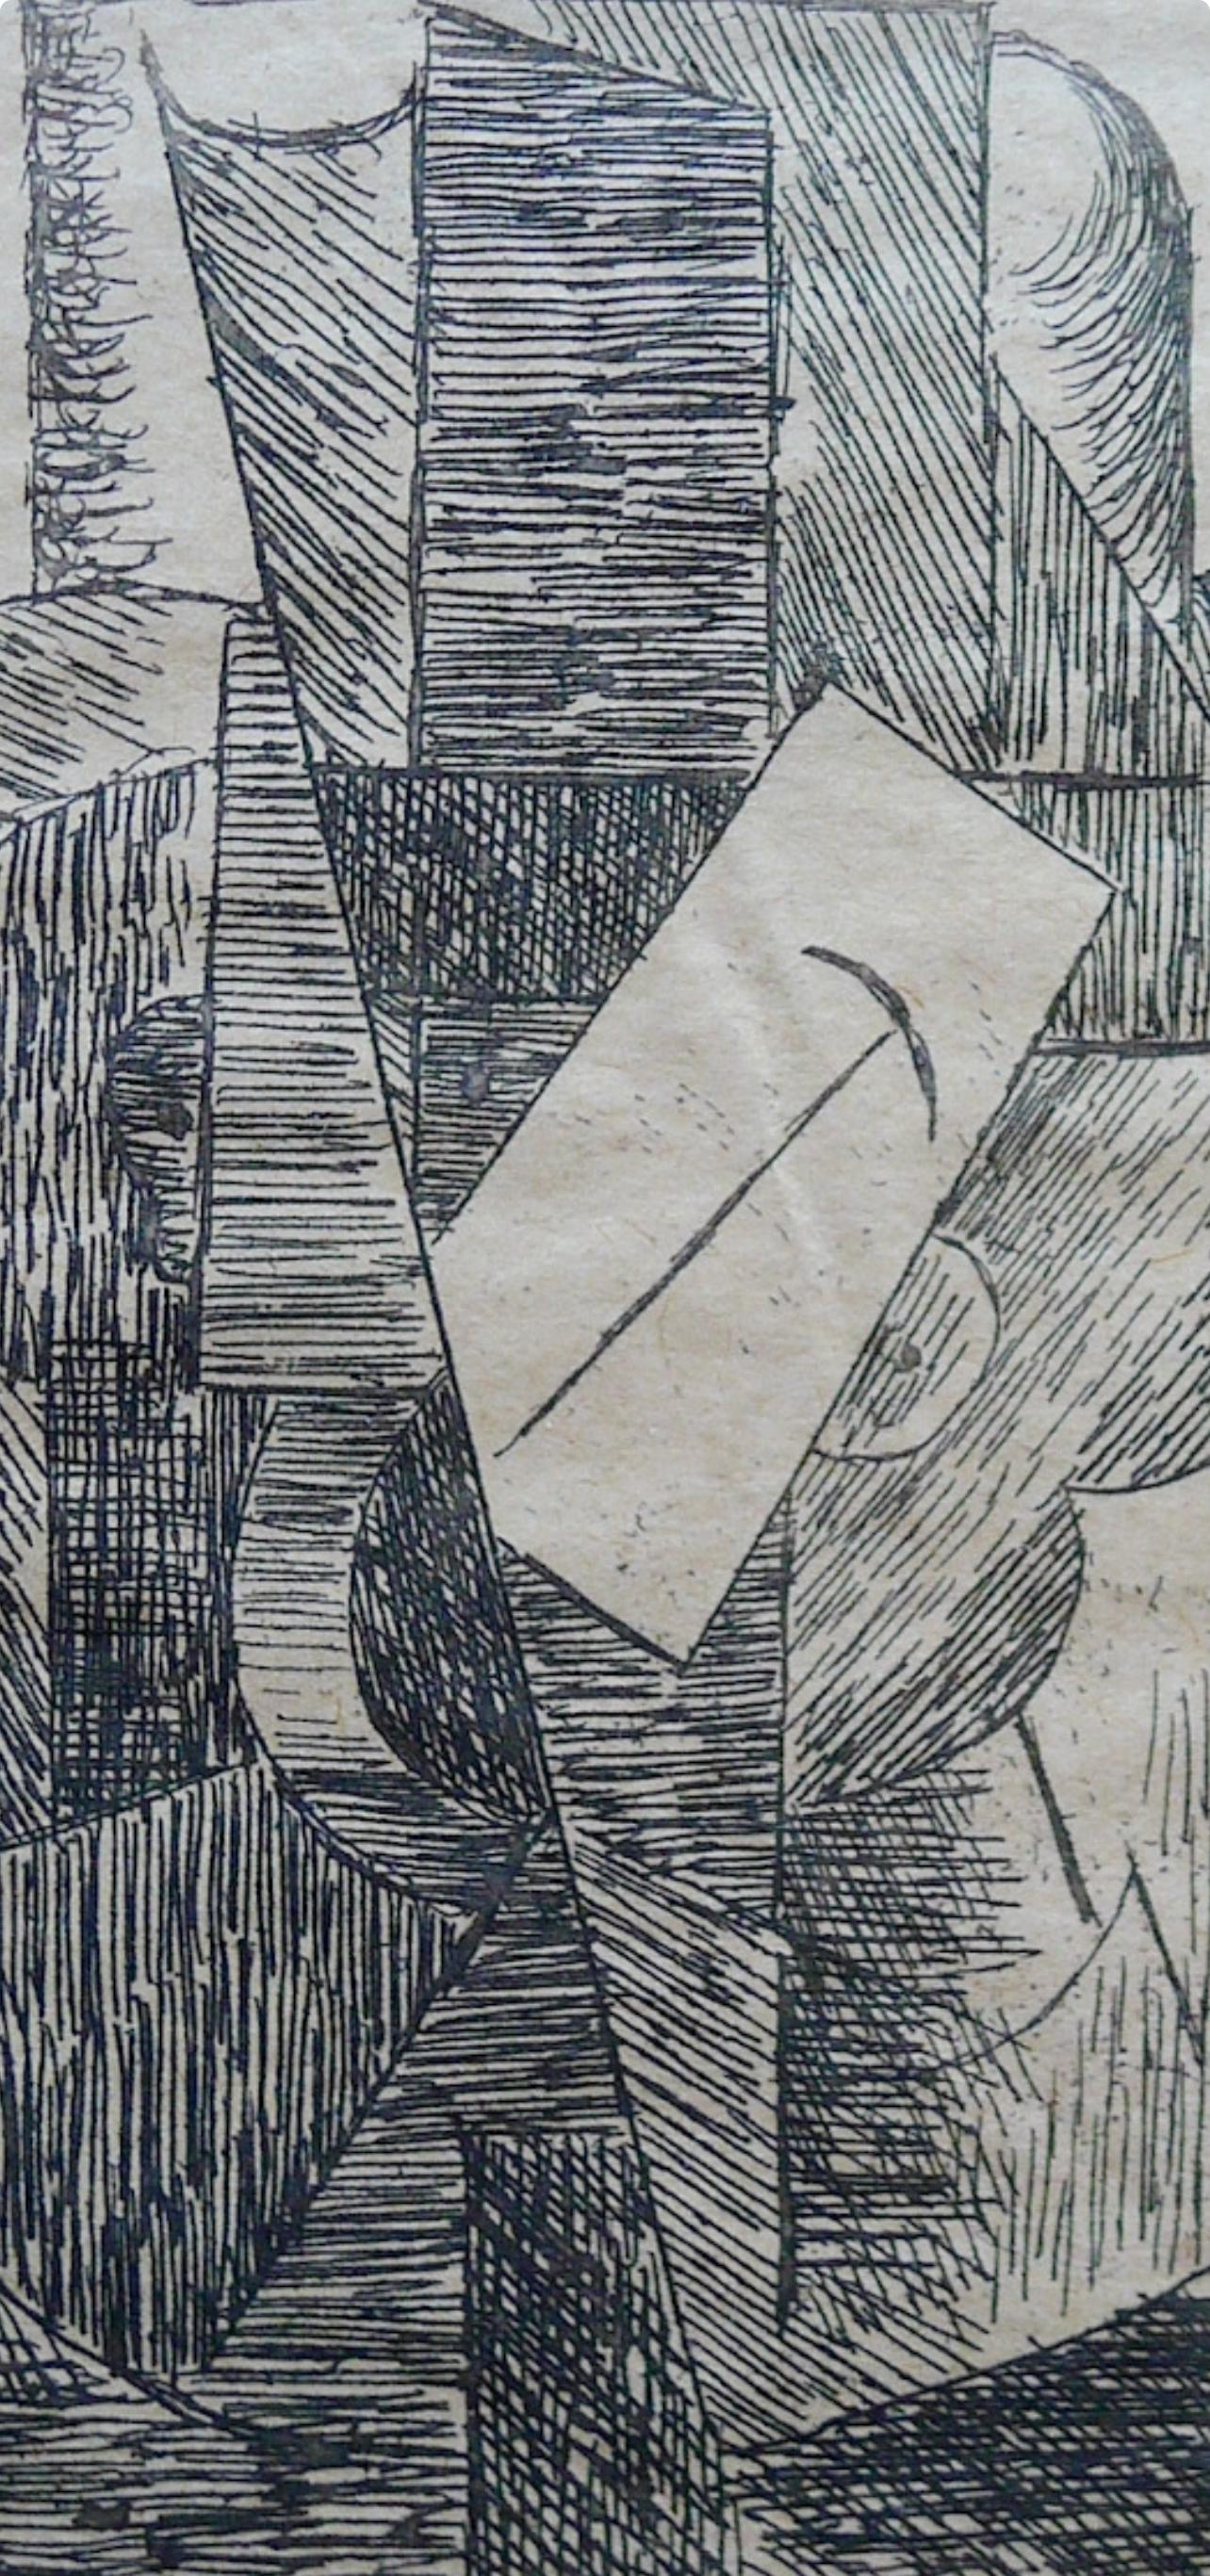 Picasso, L'Homme au chapeau (Bloch 29; Baer 42; Cramer 46), Du cubisme (after) - Modern Print by Pablo Picasso